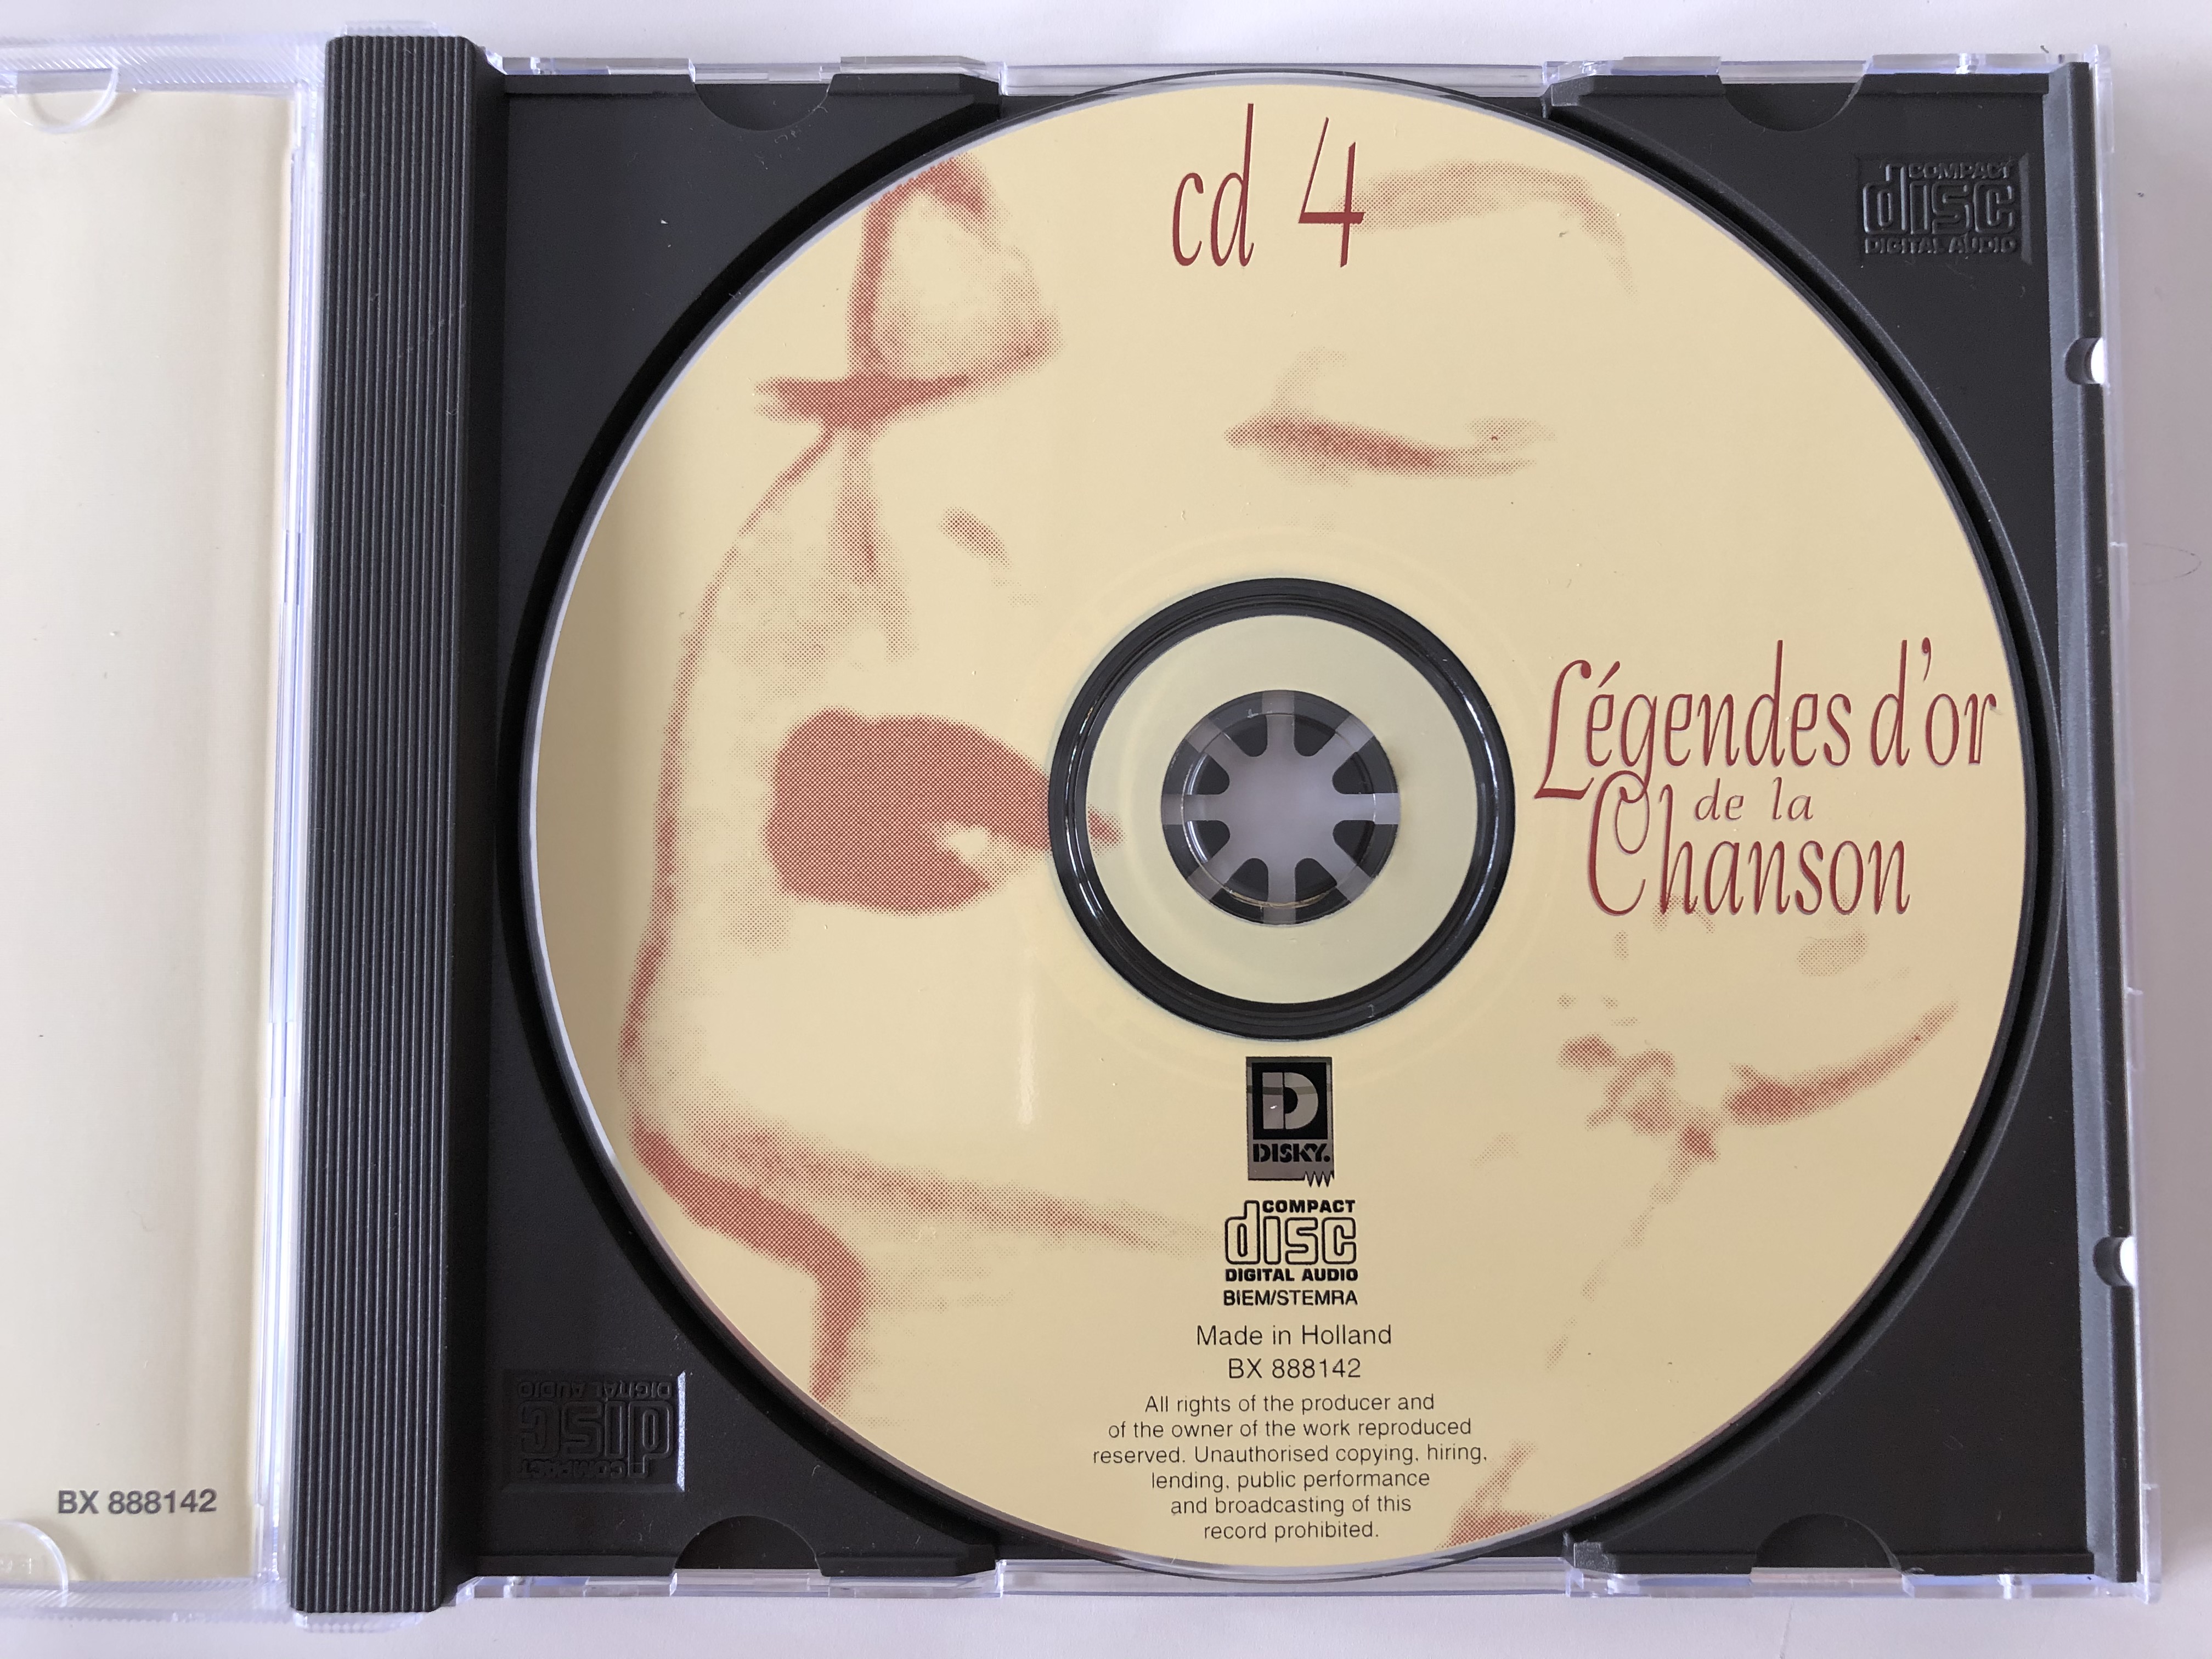 l-gendes-d-or-de-la-chanson-frehel-andre-claveau-edith-piaf-michel-simon-irene-de-trebert-cd-4-disky-audio-cd-1998-bx-888142-3-.jpg